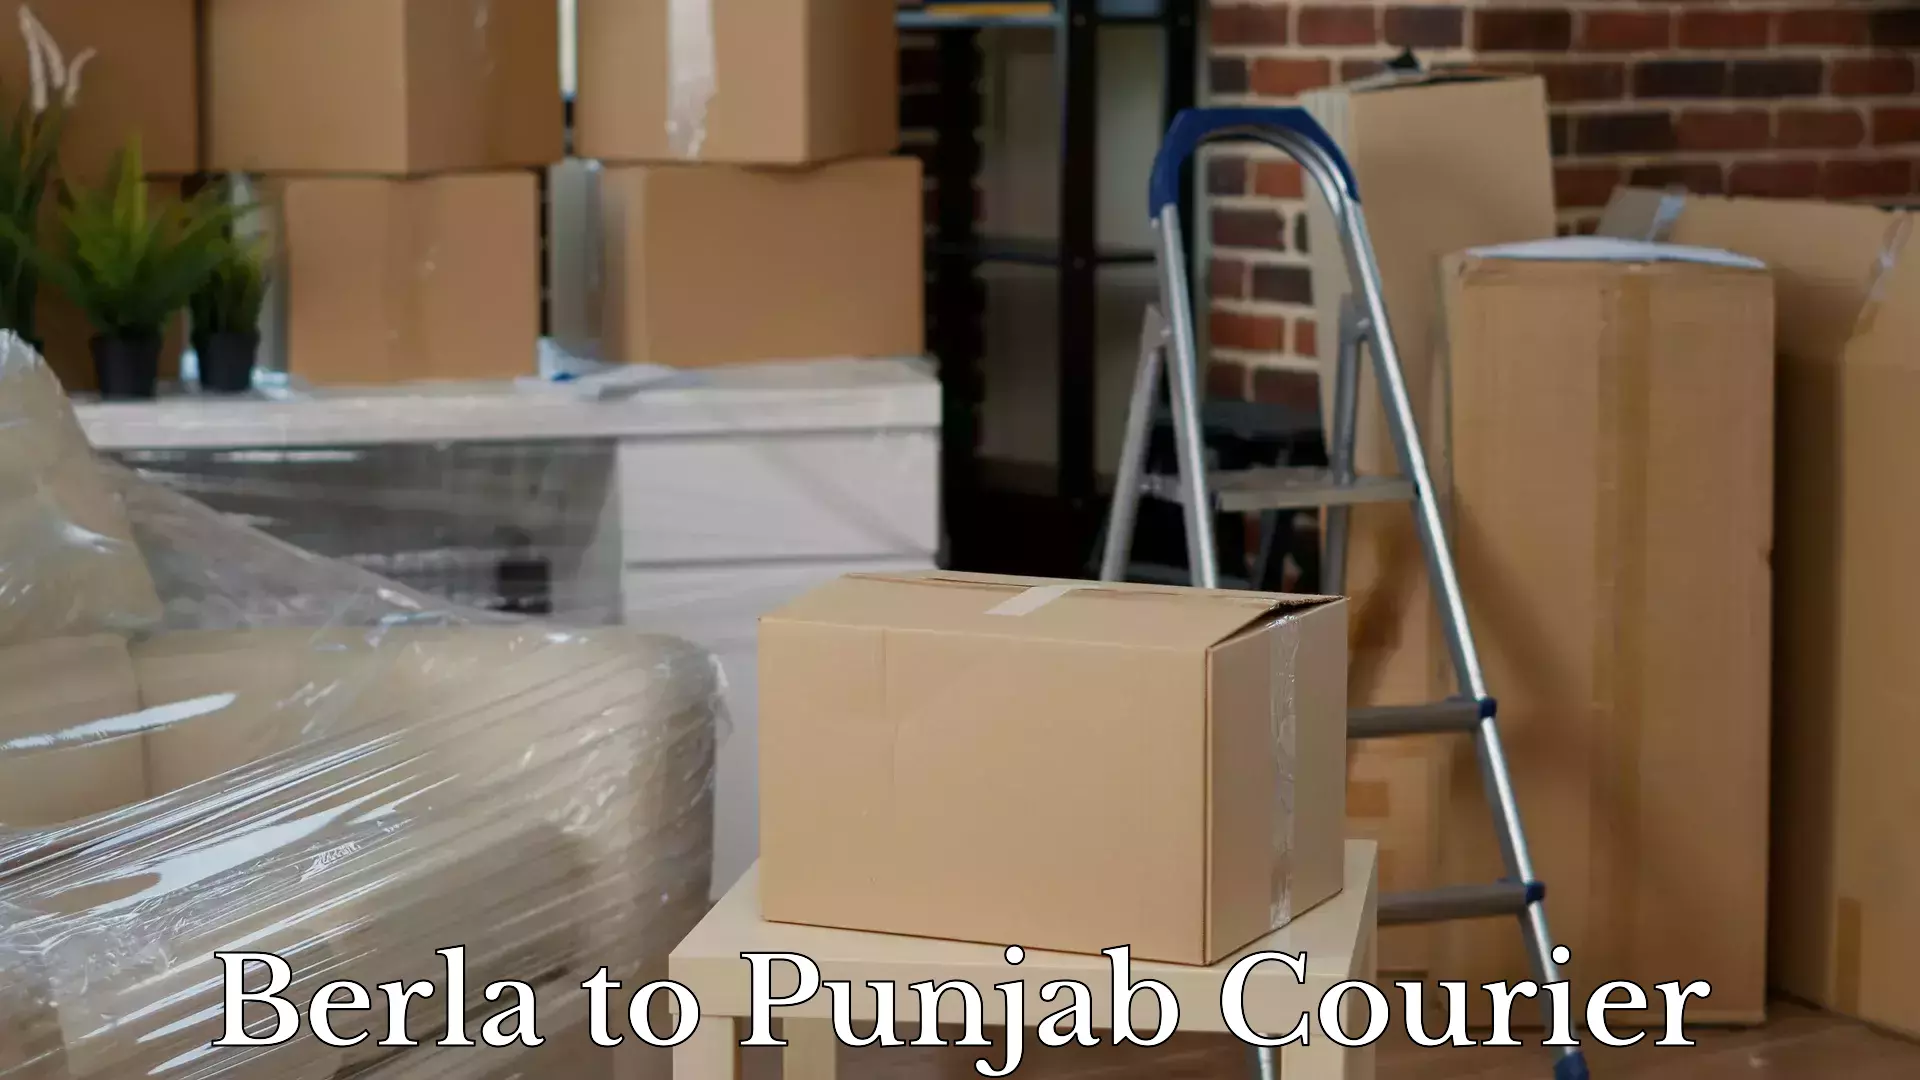 Door-to-door baggage service Berla to Punjab